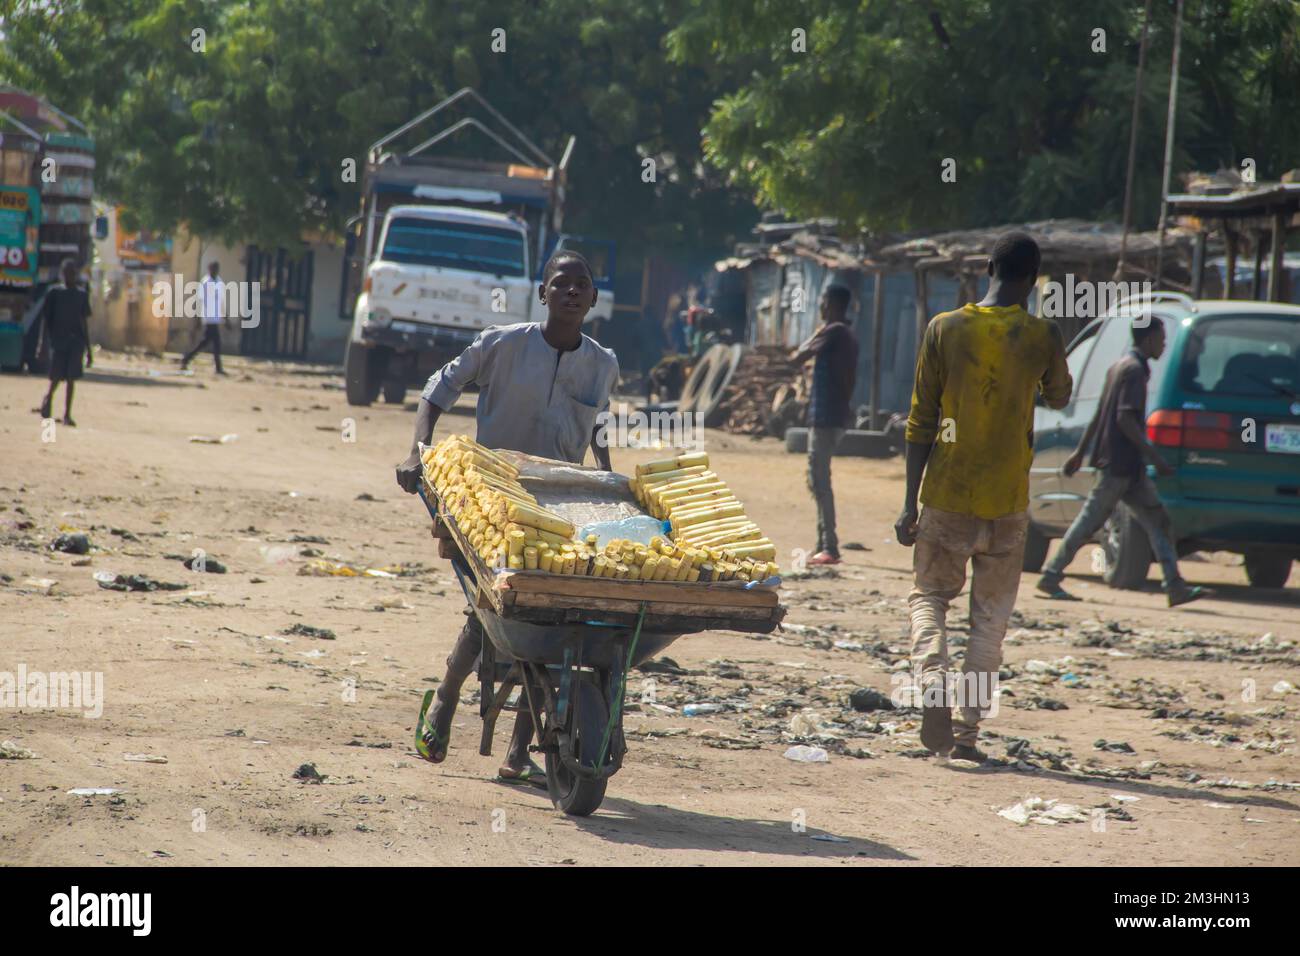 Vendeurs mobiles de rue dans les rues africaines vendant la canne à sucre comme bonbons locaux, bio sain sans additifs alimentaires Banque D'Images